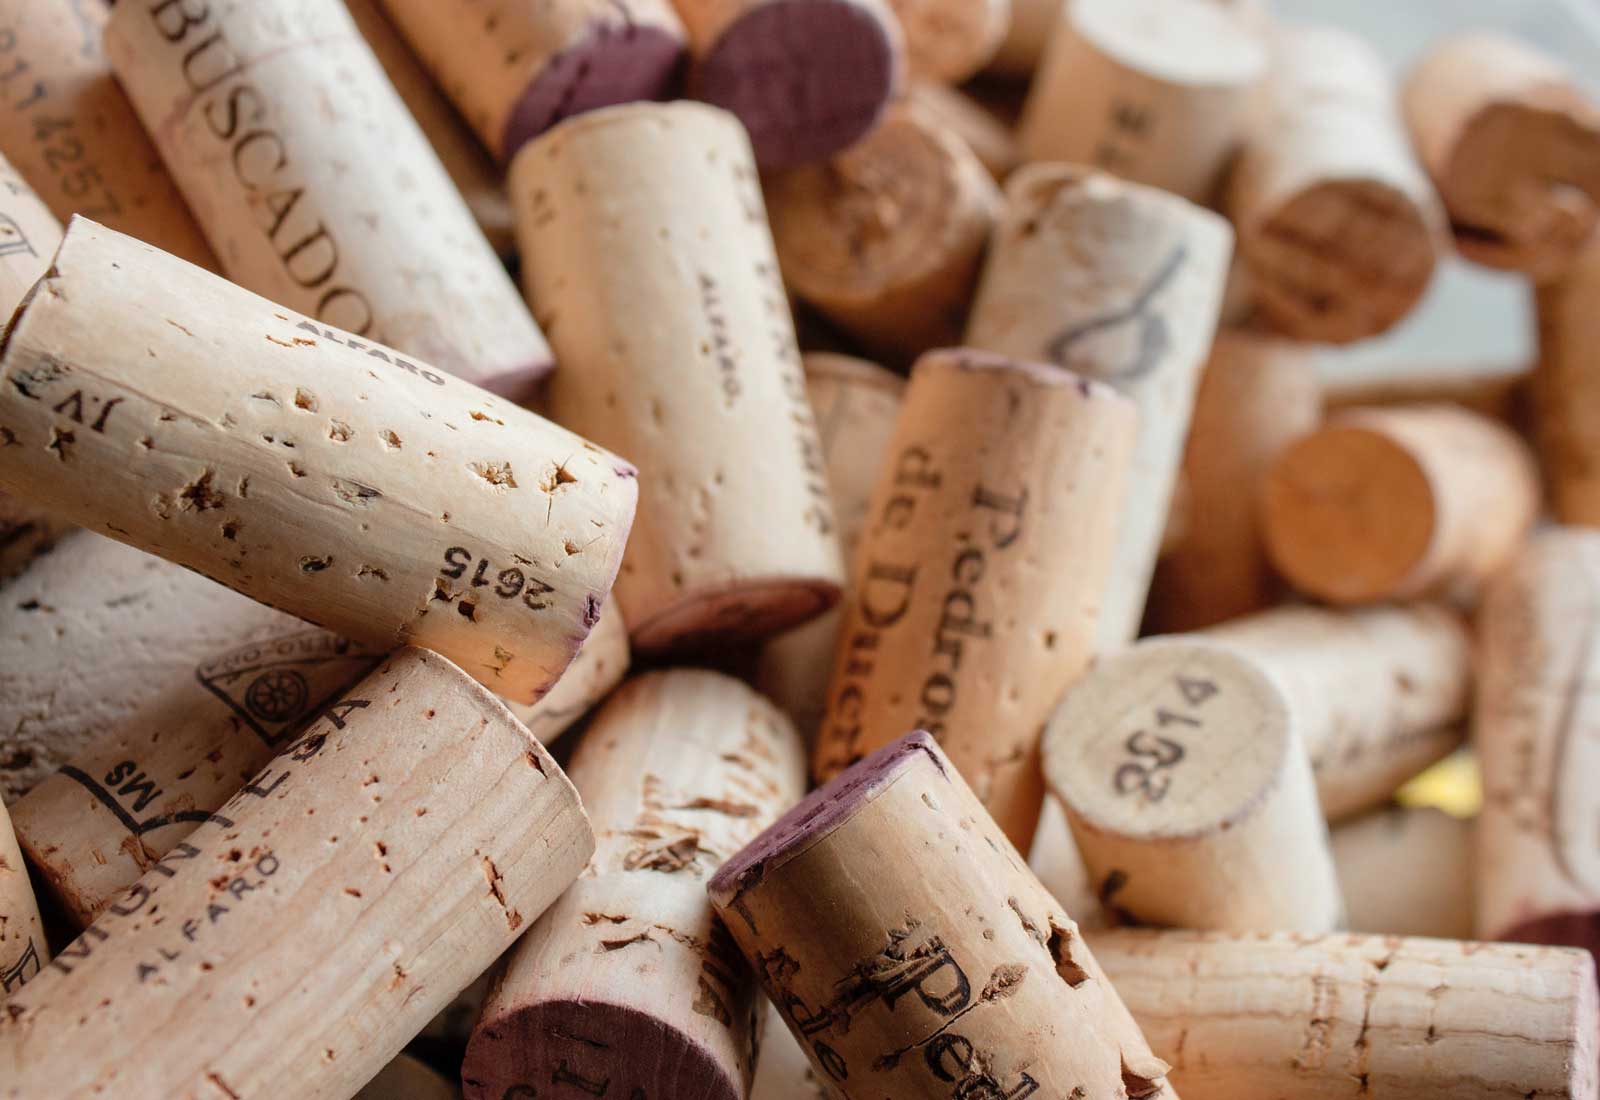 Vinos L. A. Cetto on X: ¿Conoces los tipos de corchos utilizados en la  industria vitivinícola? Aquí te decimos los 6 más usados y sus principales  características, ¿qué otros conoces?  /